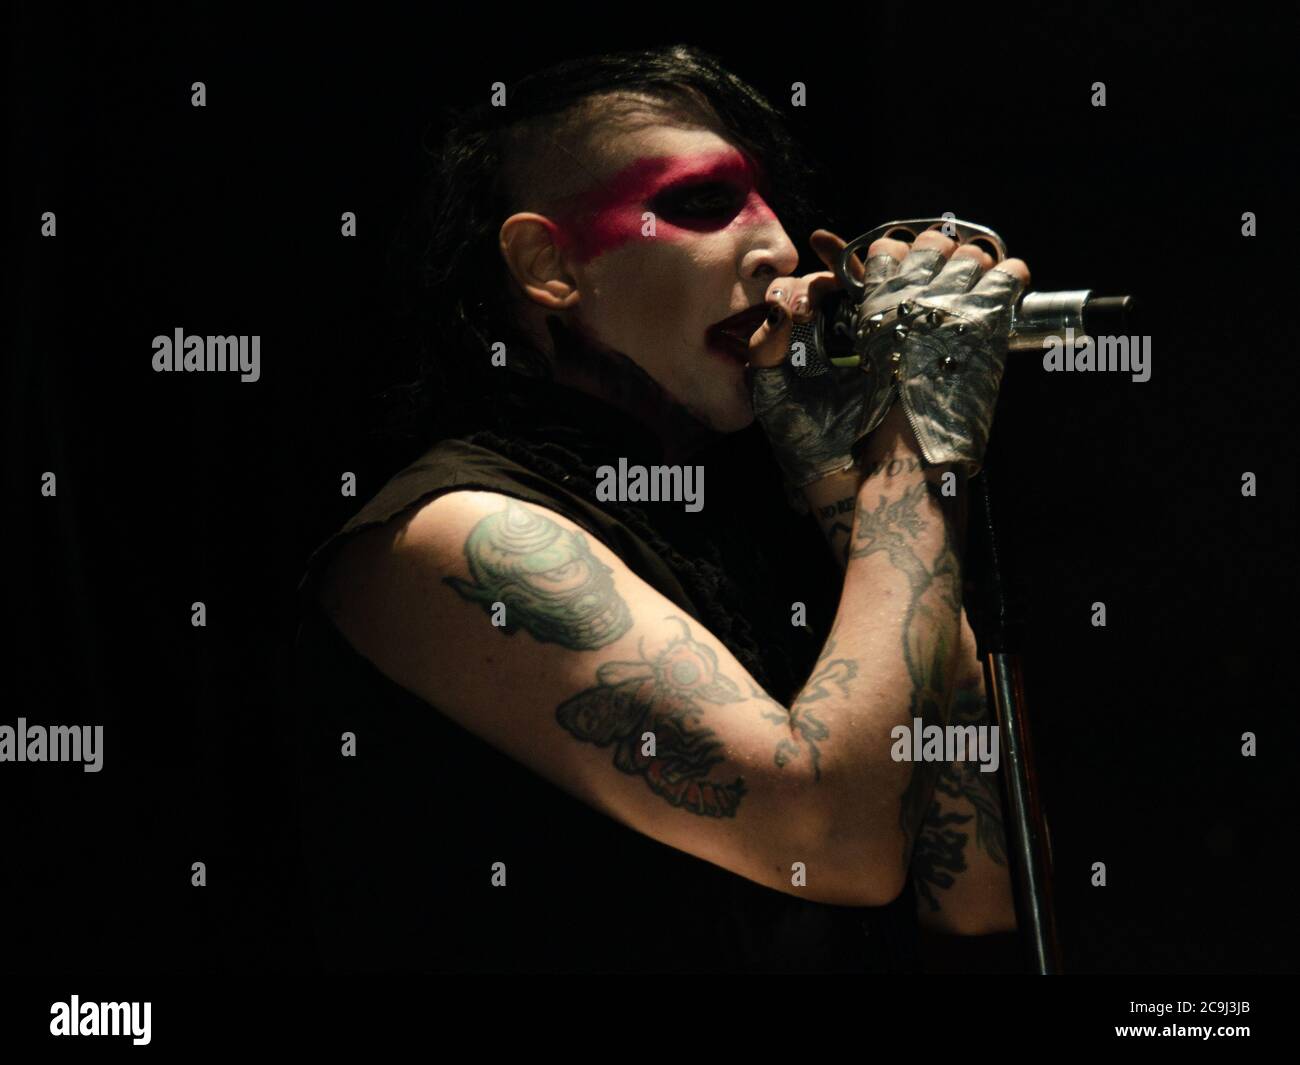 18 agosto 2012, West Hollywood, California, USA: Marilyn Manson suona il 3° giorno del Sunset Strip Music Festival (immagine di credito: © Billy Bendnight/ZUMA Wire) Foto Stock